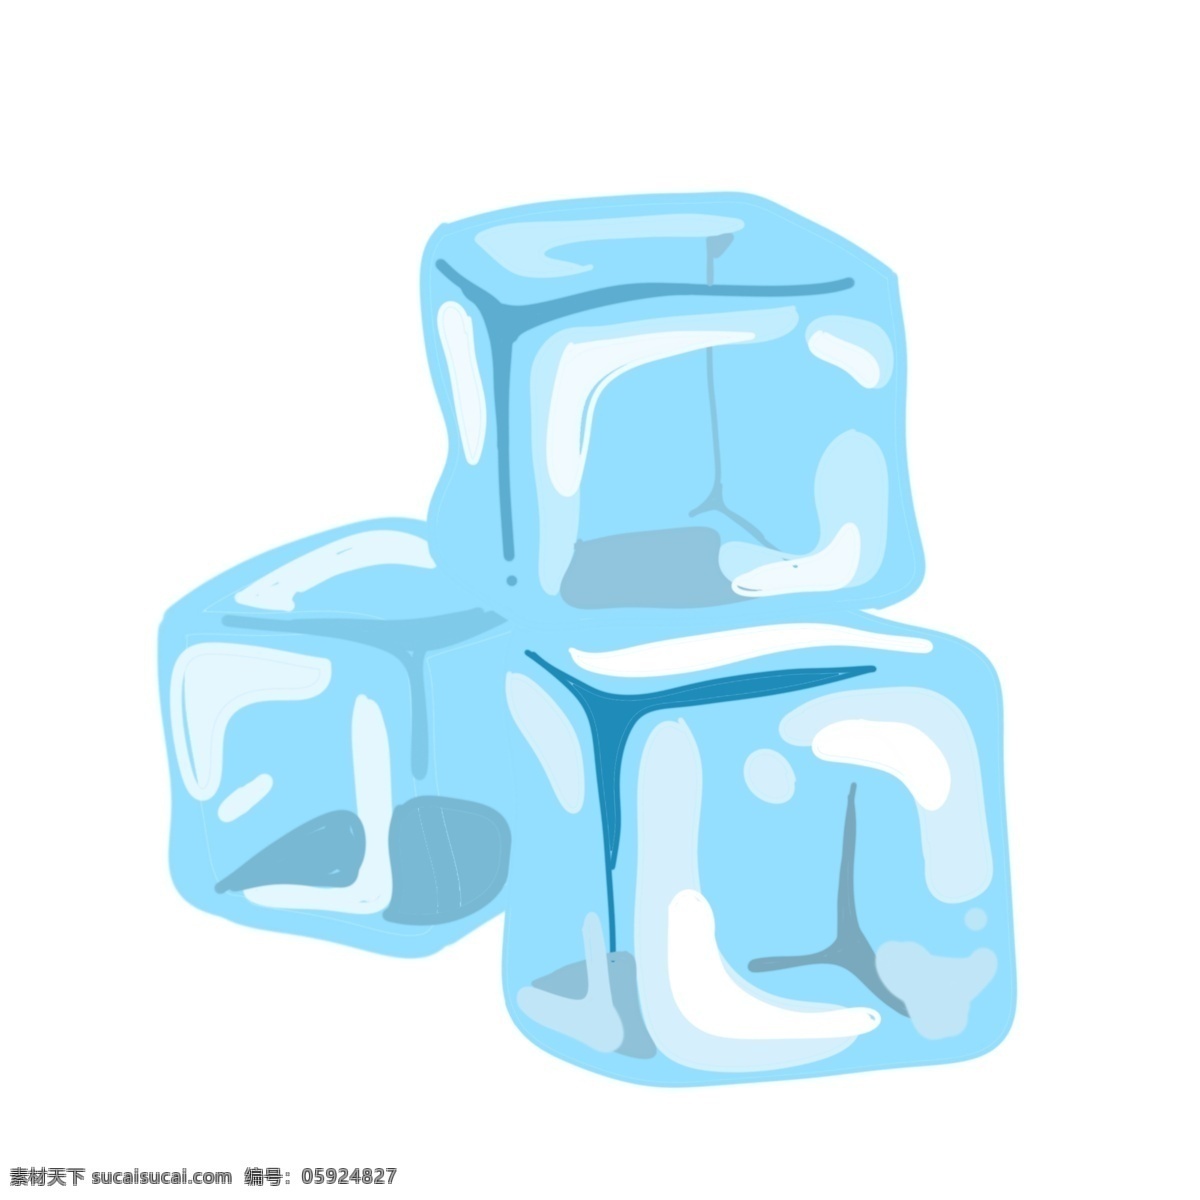 重叠 冰块 装饰 插画 重叠的冰块 蓝色的冰块 漂亮的冰块 创意冰块 立体冰块 精美冰块 夏日冰块